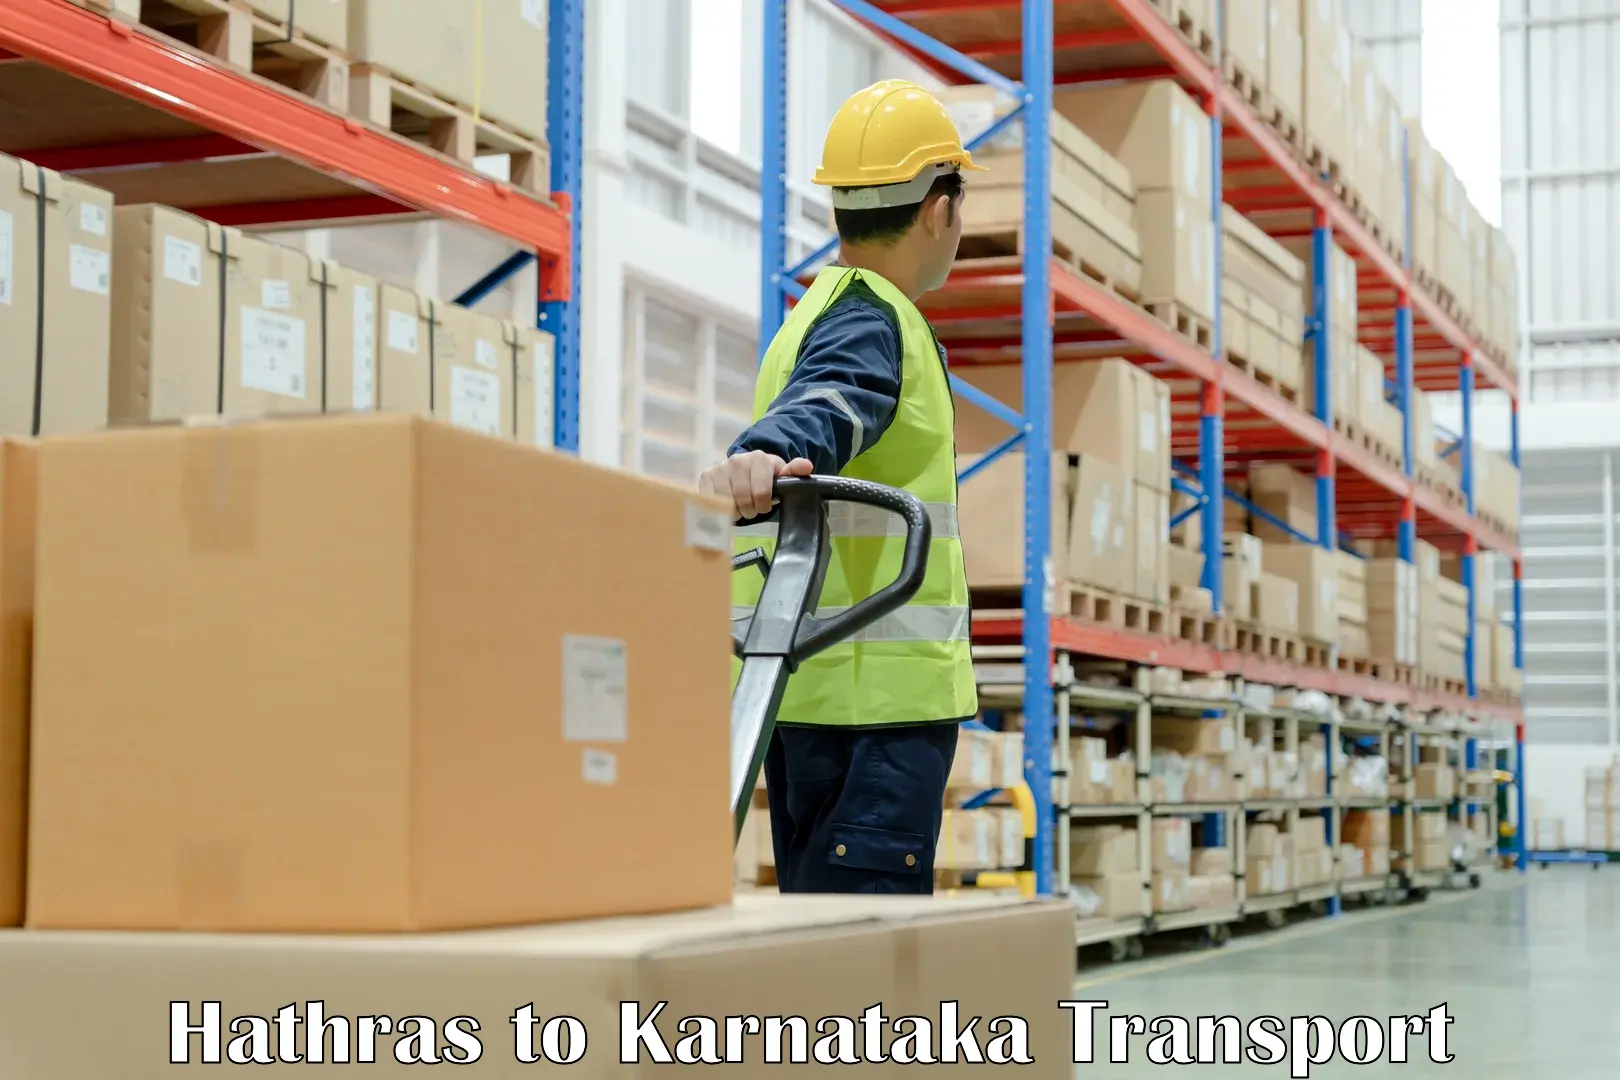 Transportation solution services Hathras to Karnataka